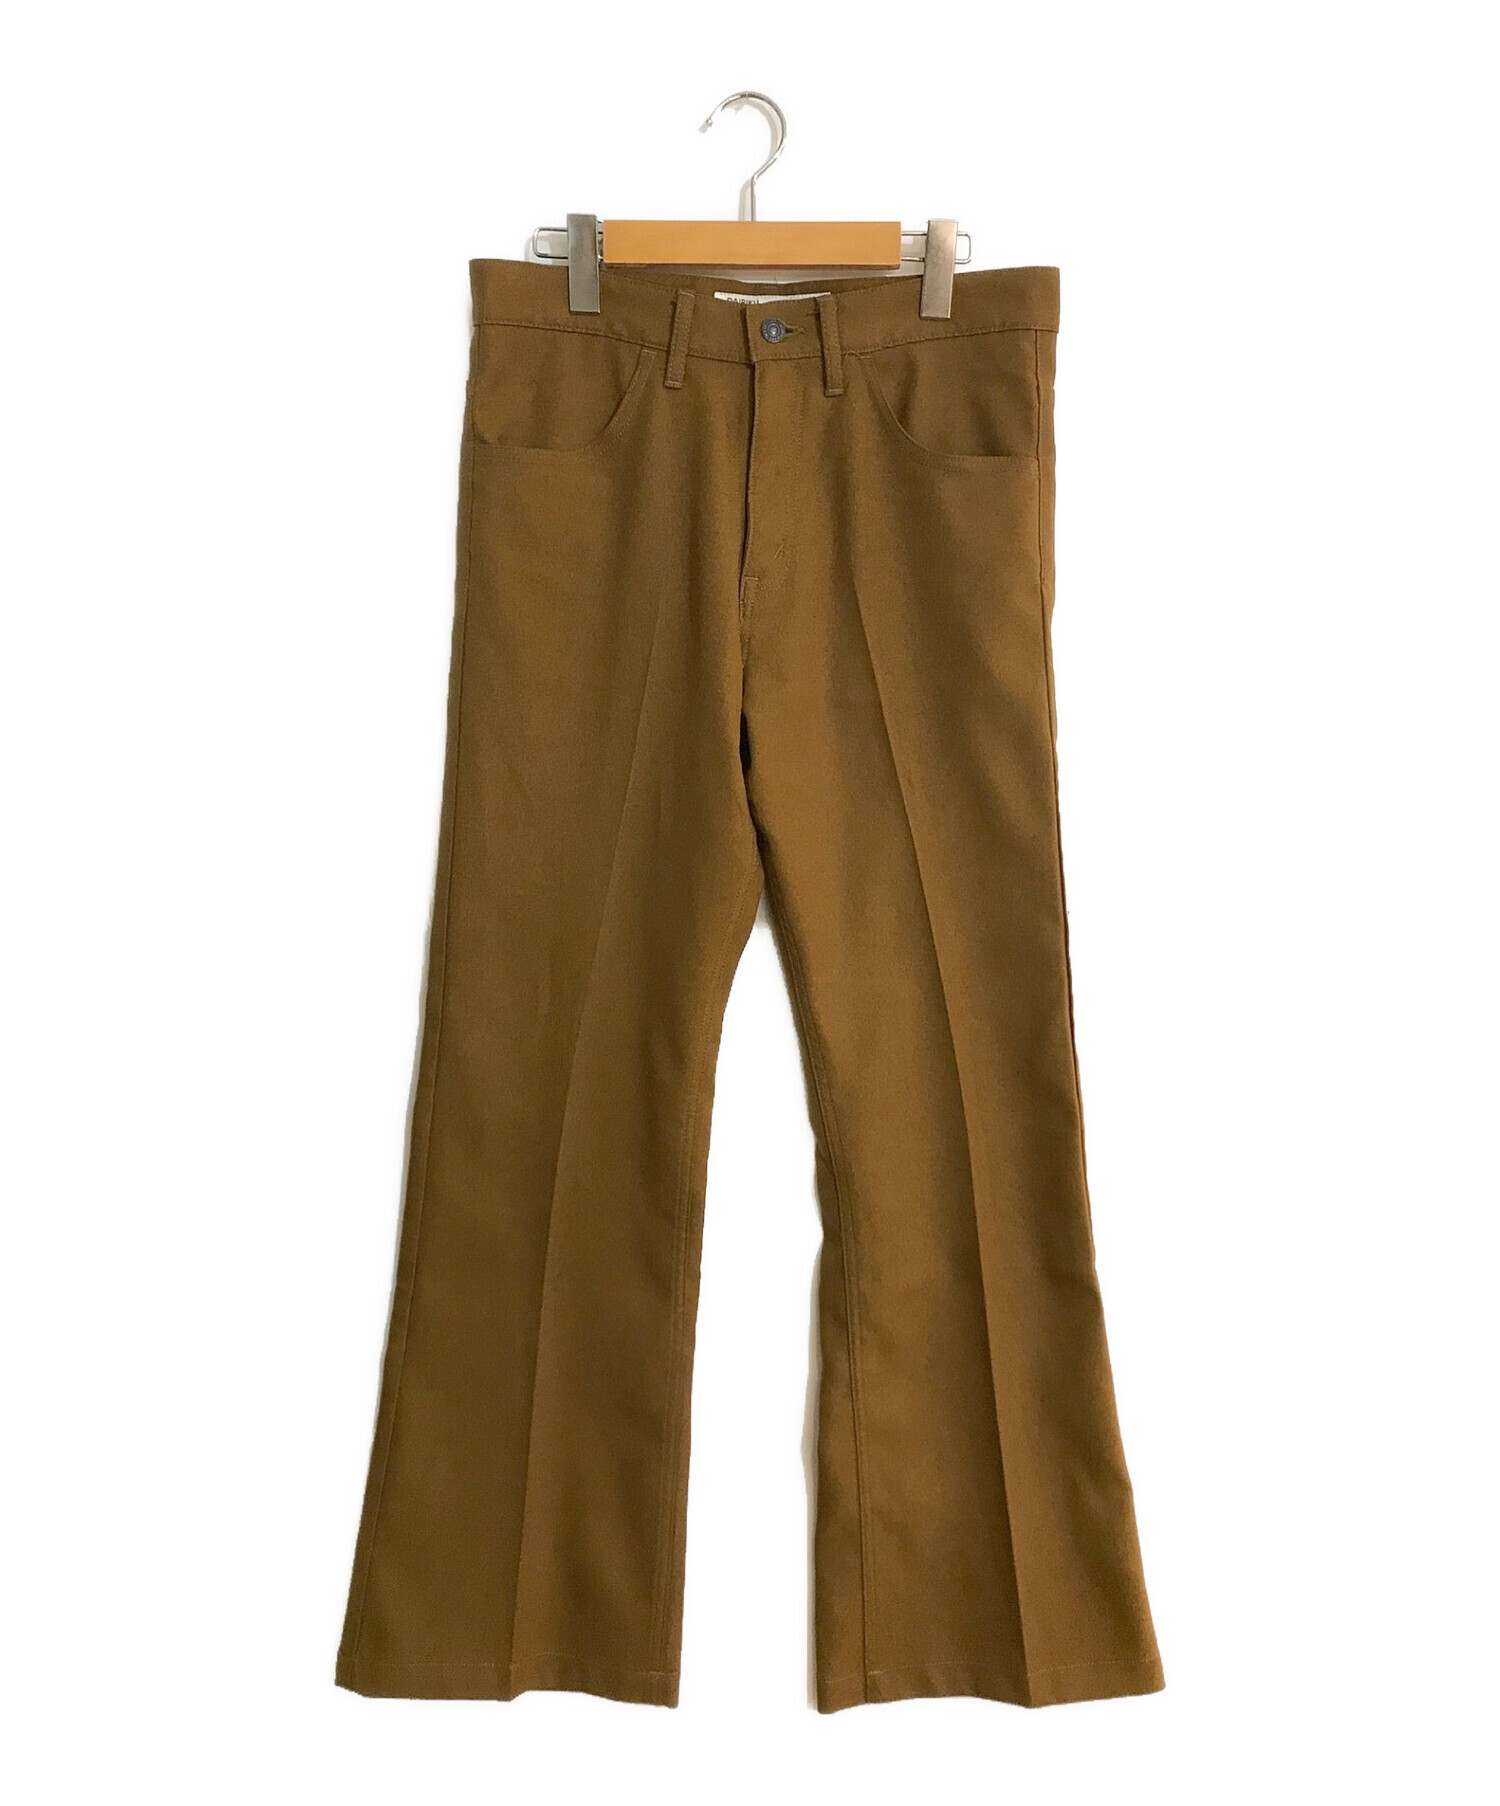 DAIRIKU (ダイリク) Flare Flasher Pressed Pants/フレアフラッシャープレスドパンツ ブラウン サイズ:W29